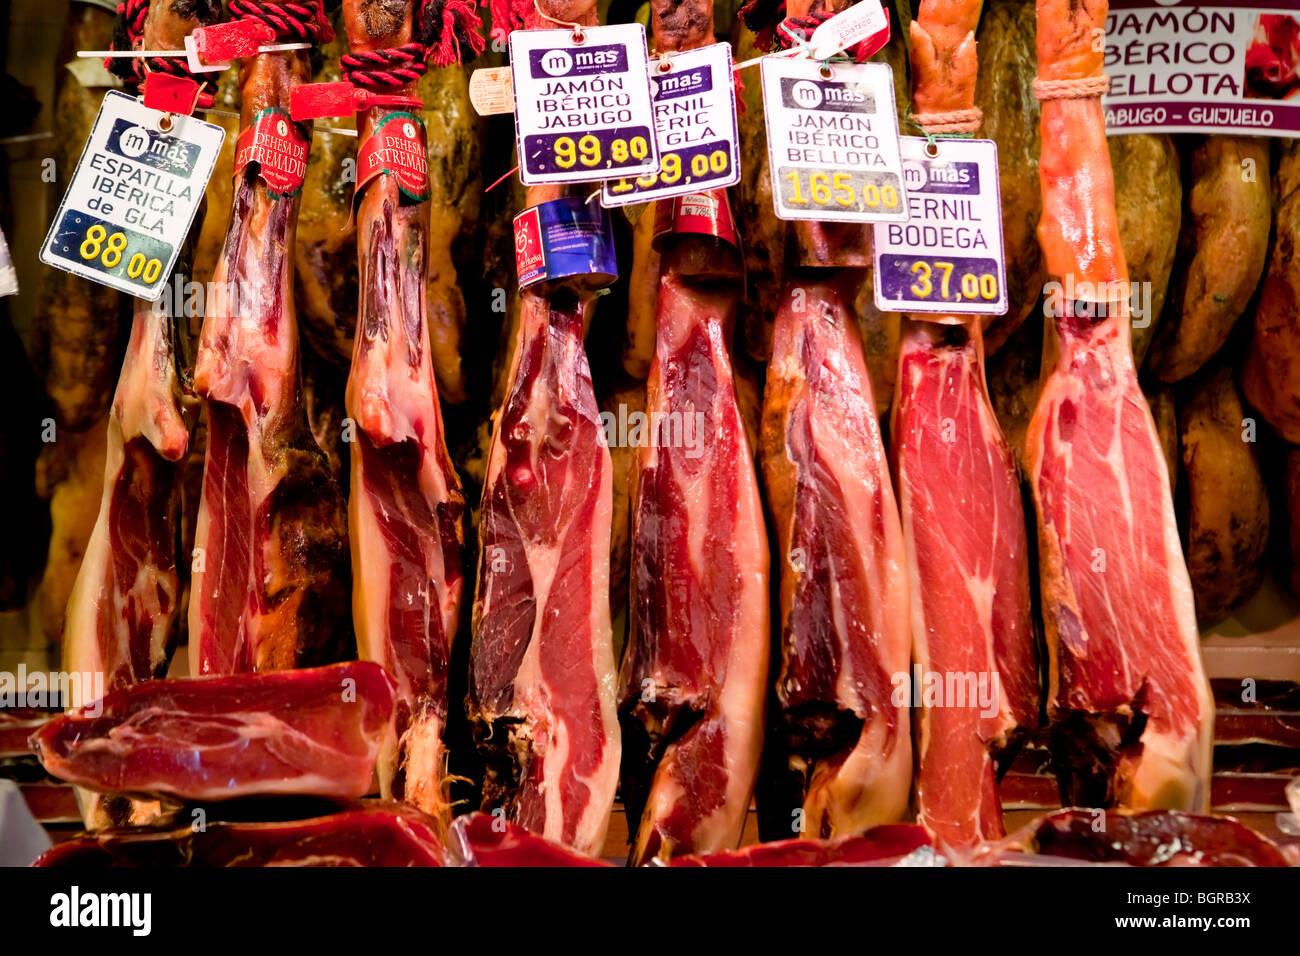 Barcellona - Il mercato della Boqueria - La Rambla Foto Stock